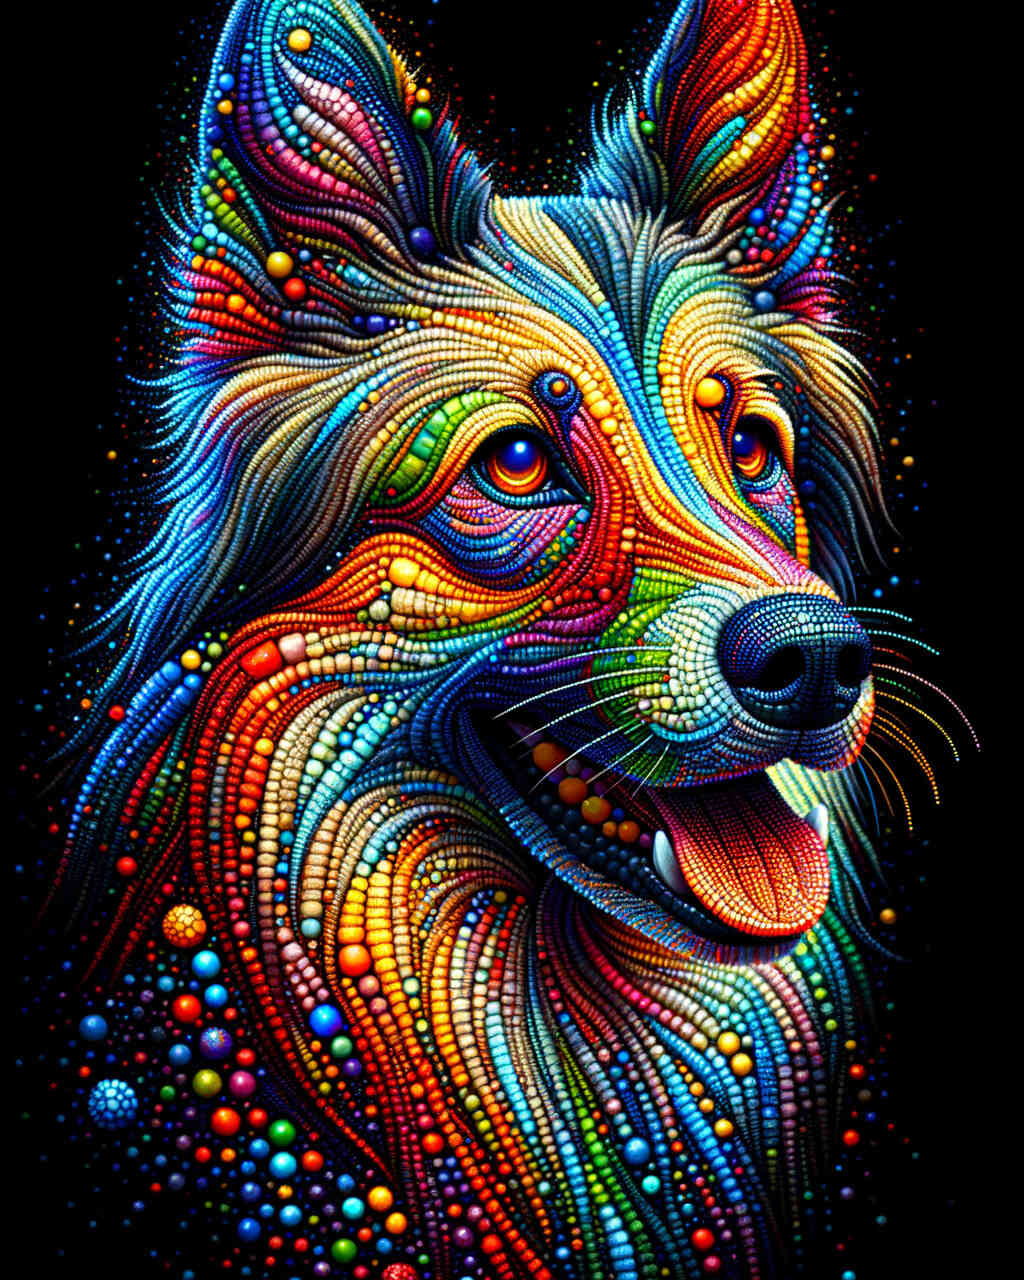 Diamond Painting - Bunter Hund